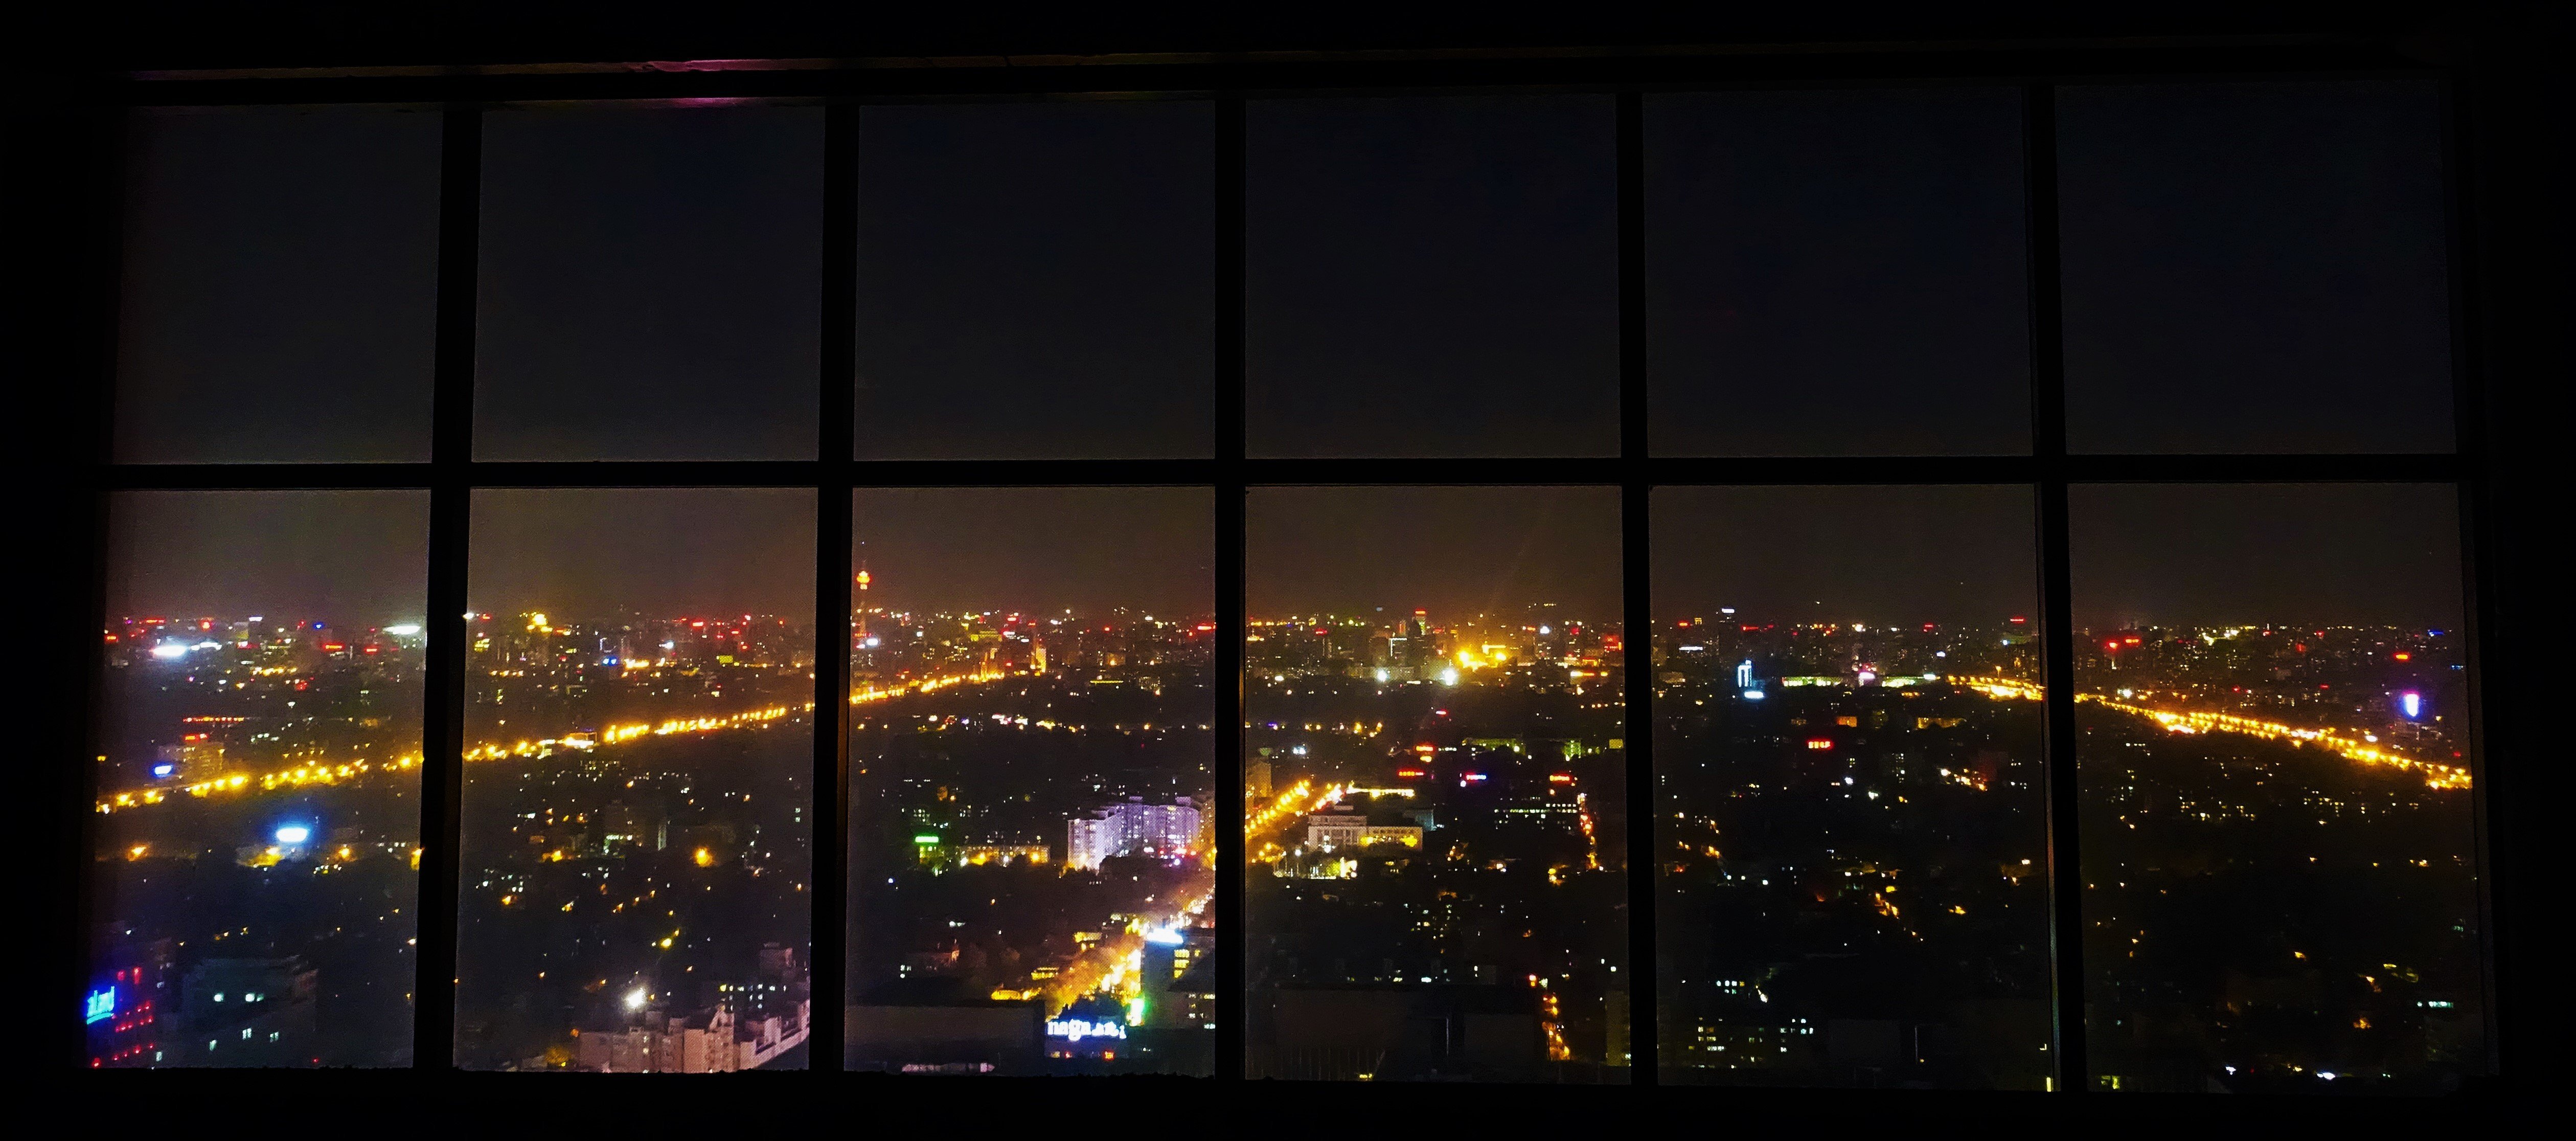 The window last night. Вид ночного города из окна. Вид из панорамного окна. Вид из панорамного окна ночью. Вид из окна на ночной город.